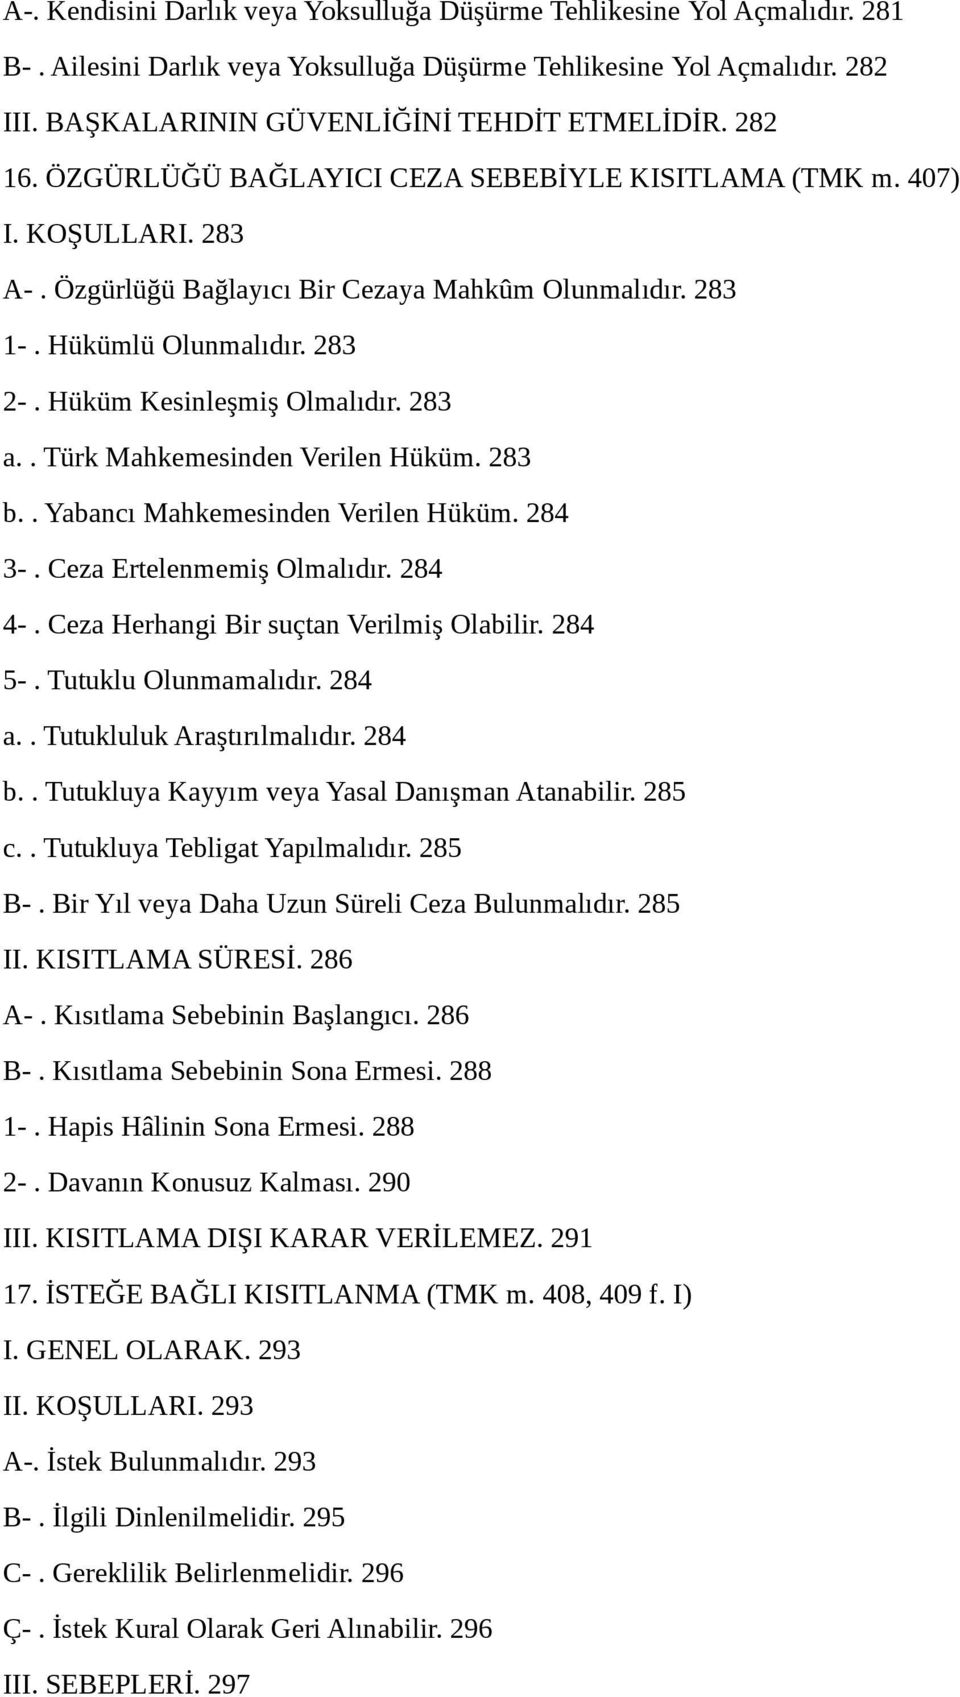 Hüküm Kesinleşmiş Olmalıdır. 283 a.. Türk Mahkemesinden Verilen Hüküm. 283 b.. Yabancı Mahkemesinden Verilen Hüküm. 284 3-. Ceza Ertelenmemiş Olmalıdır. 284 4-.